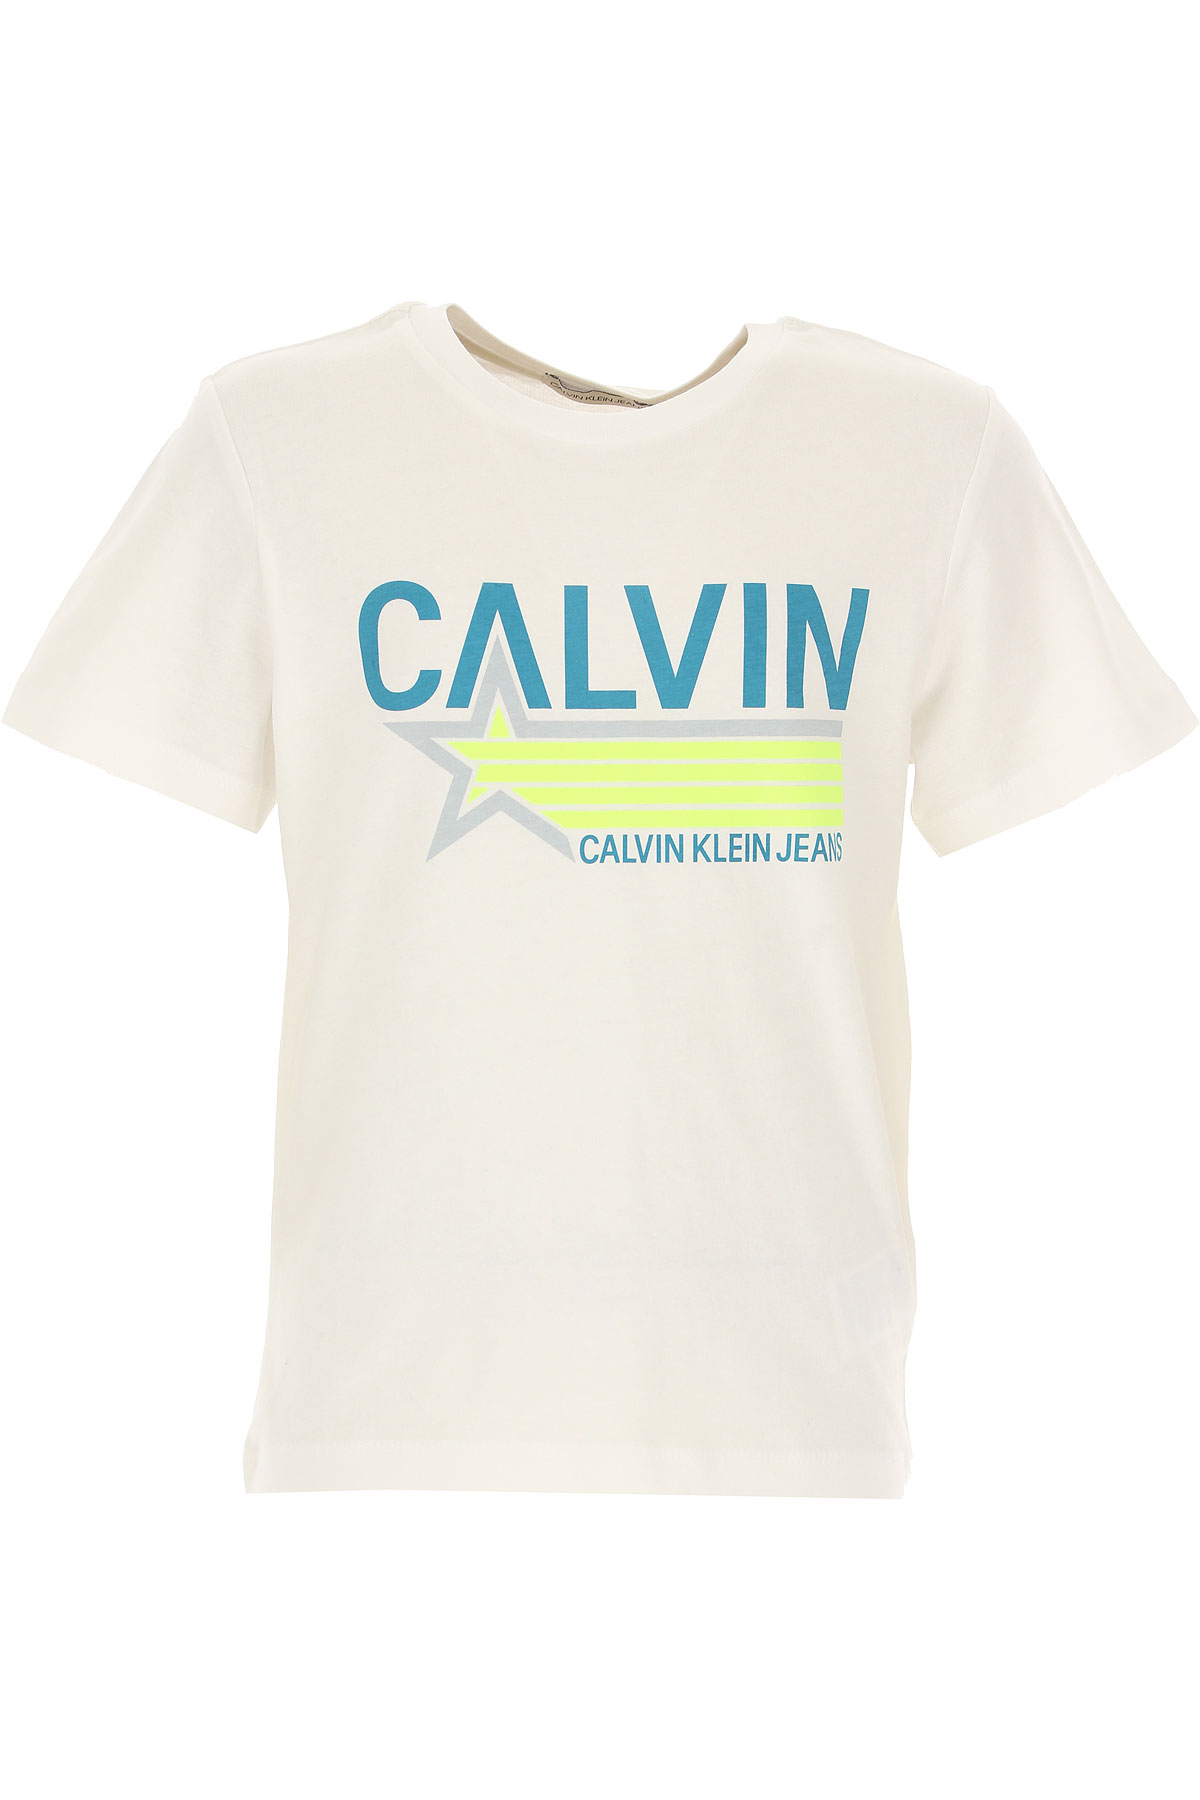 Calvin Klein Kinder T-Shirt für Jungen Günstig im Sale, Weiss, Baumwolle, 2017, 12Y 16Y 4Y 6Y